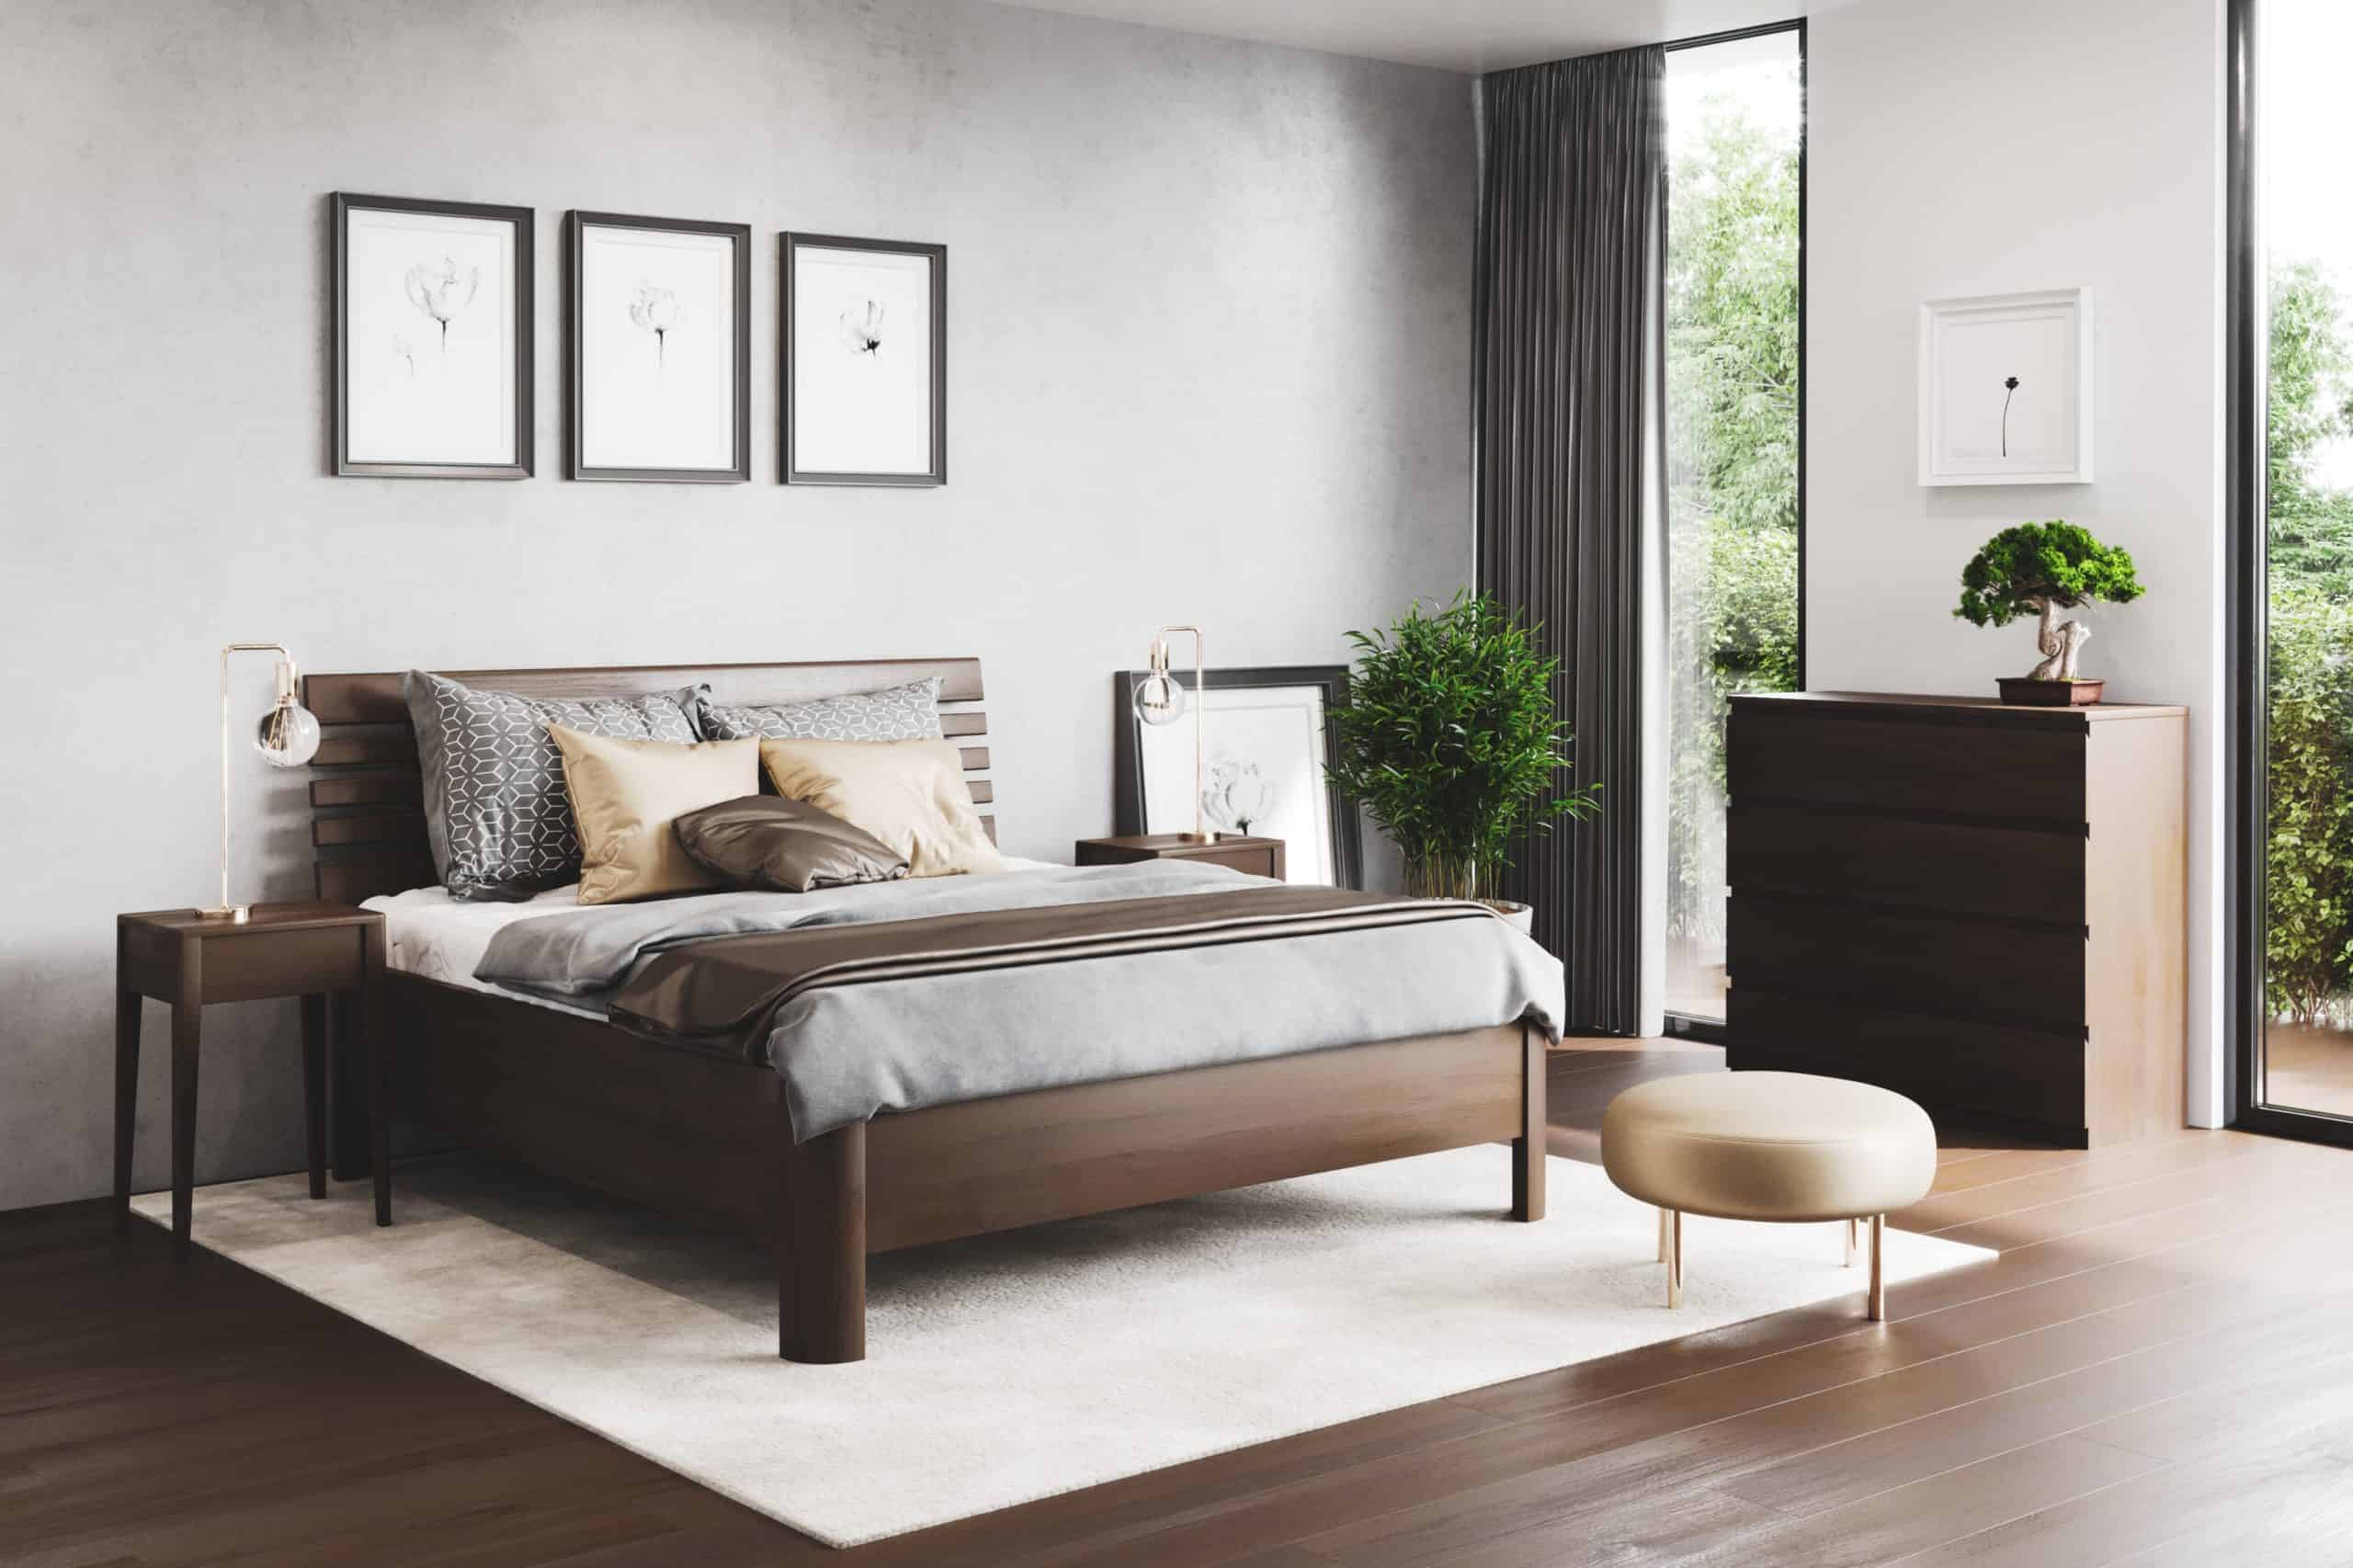 Furniture catalogue | Interior Designio